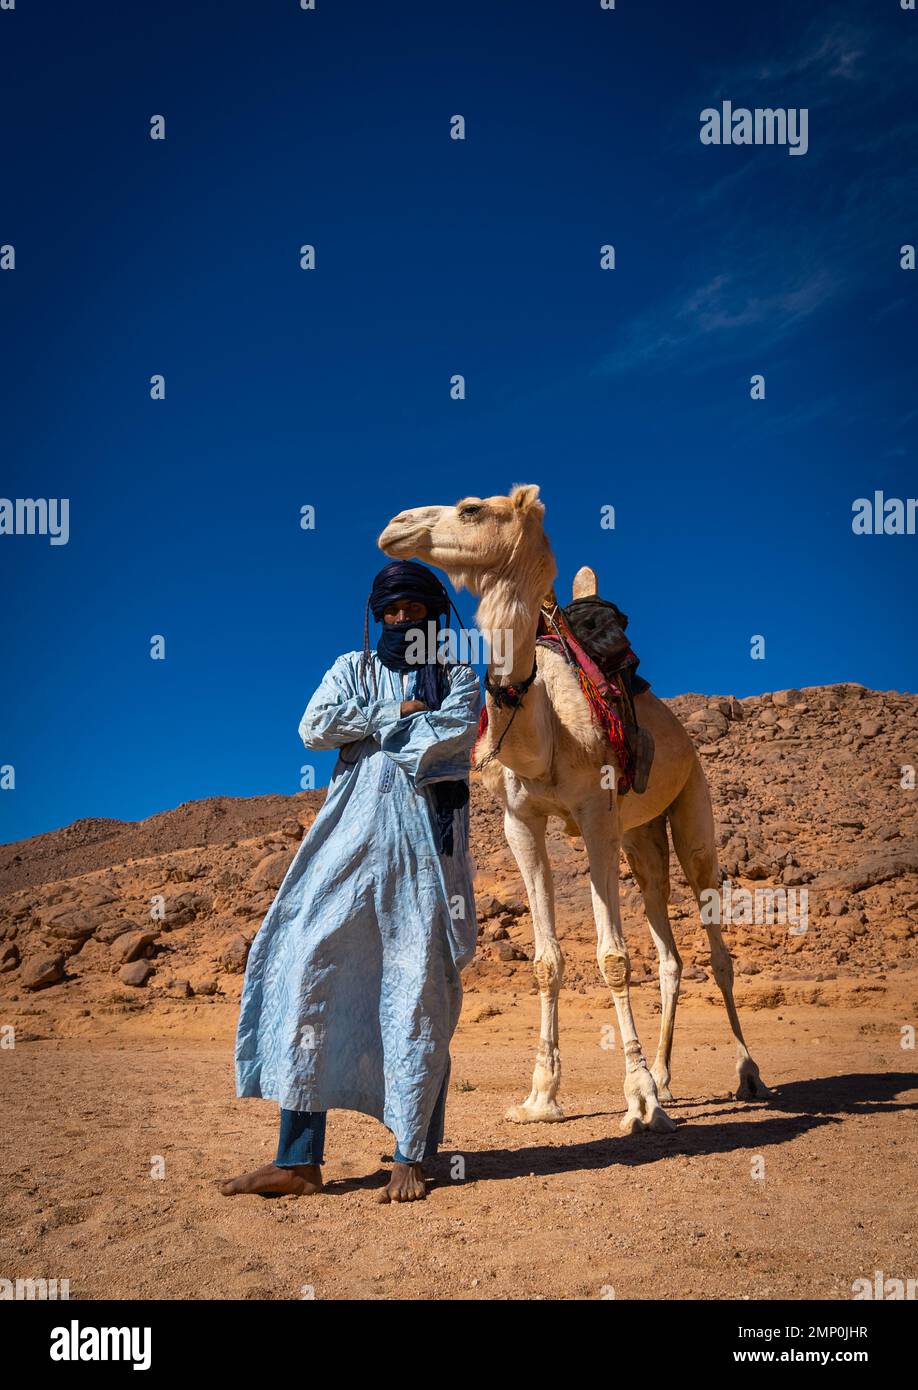 Tuareg homme debout devant son chameau dans le désert, Afrique du Nord, Tamanrasset, Algérie Banque D'Images